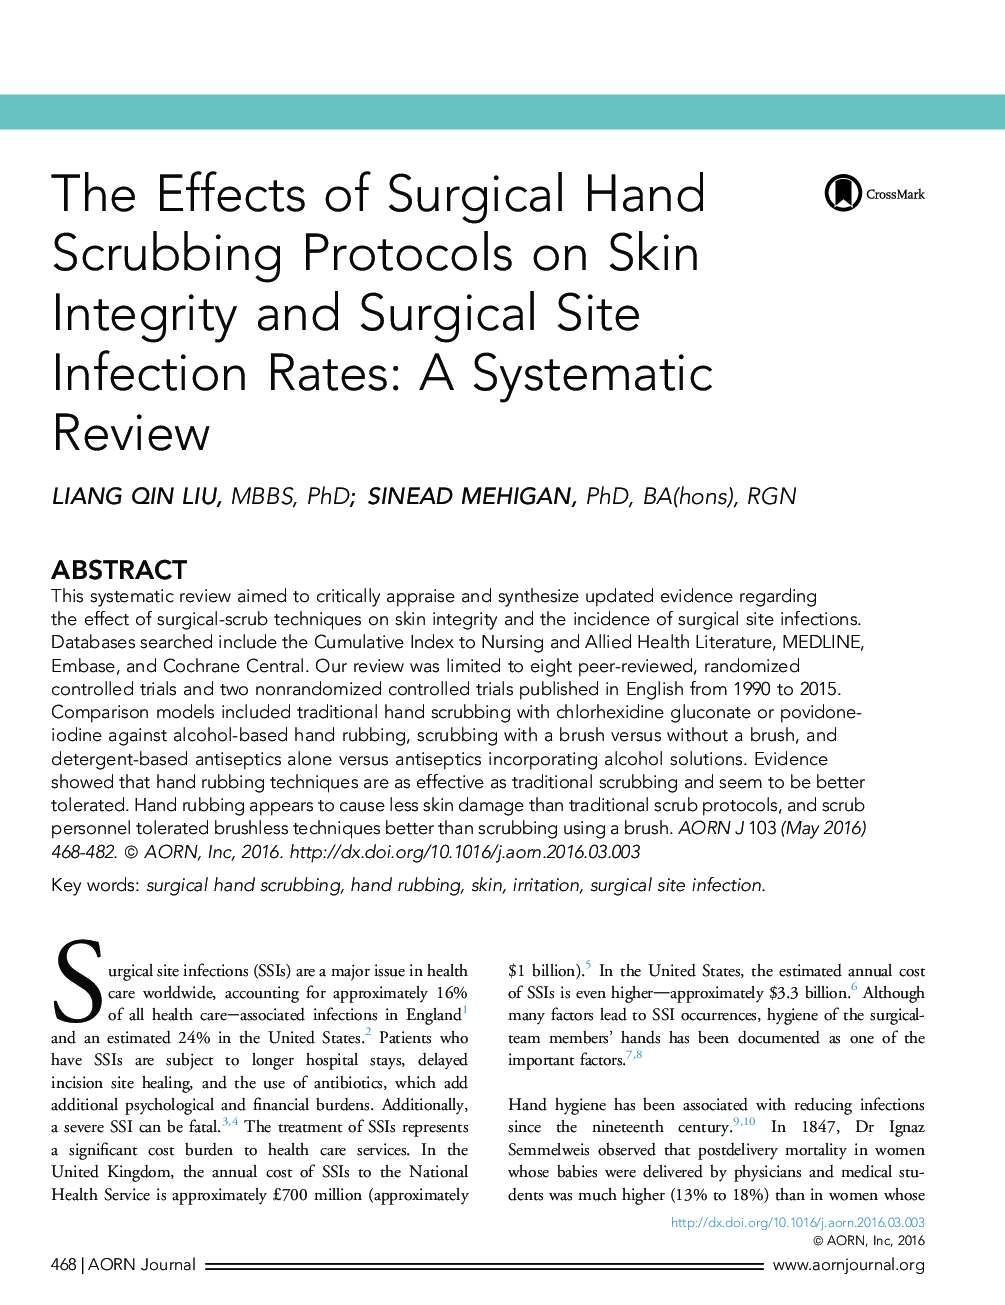 تأثیرات پروتکل های تراشیدن دست جراحی روی سلامت پوست و نرخ های عفونت سایت جراحی: یک بررسی سیستماتیک 